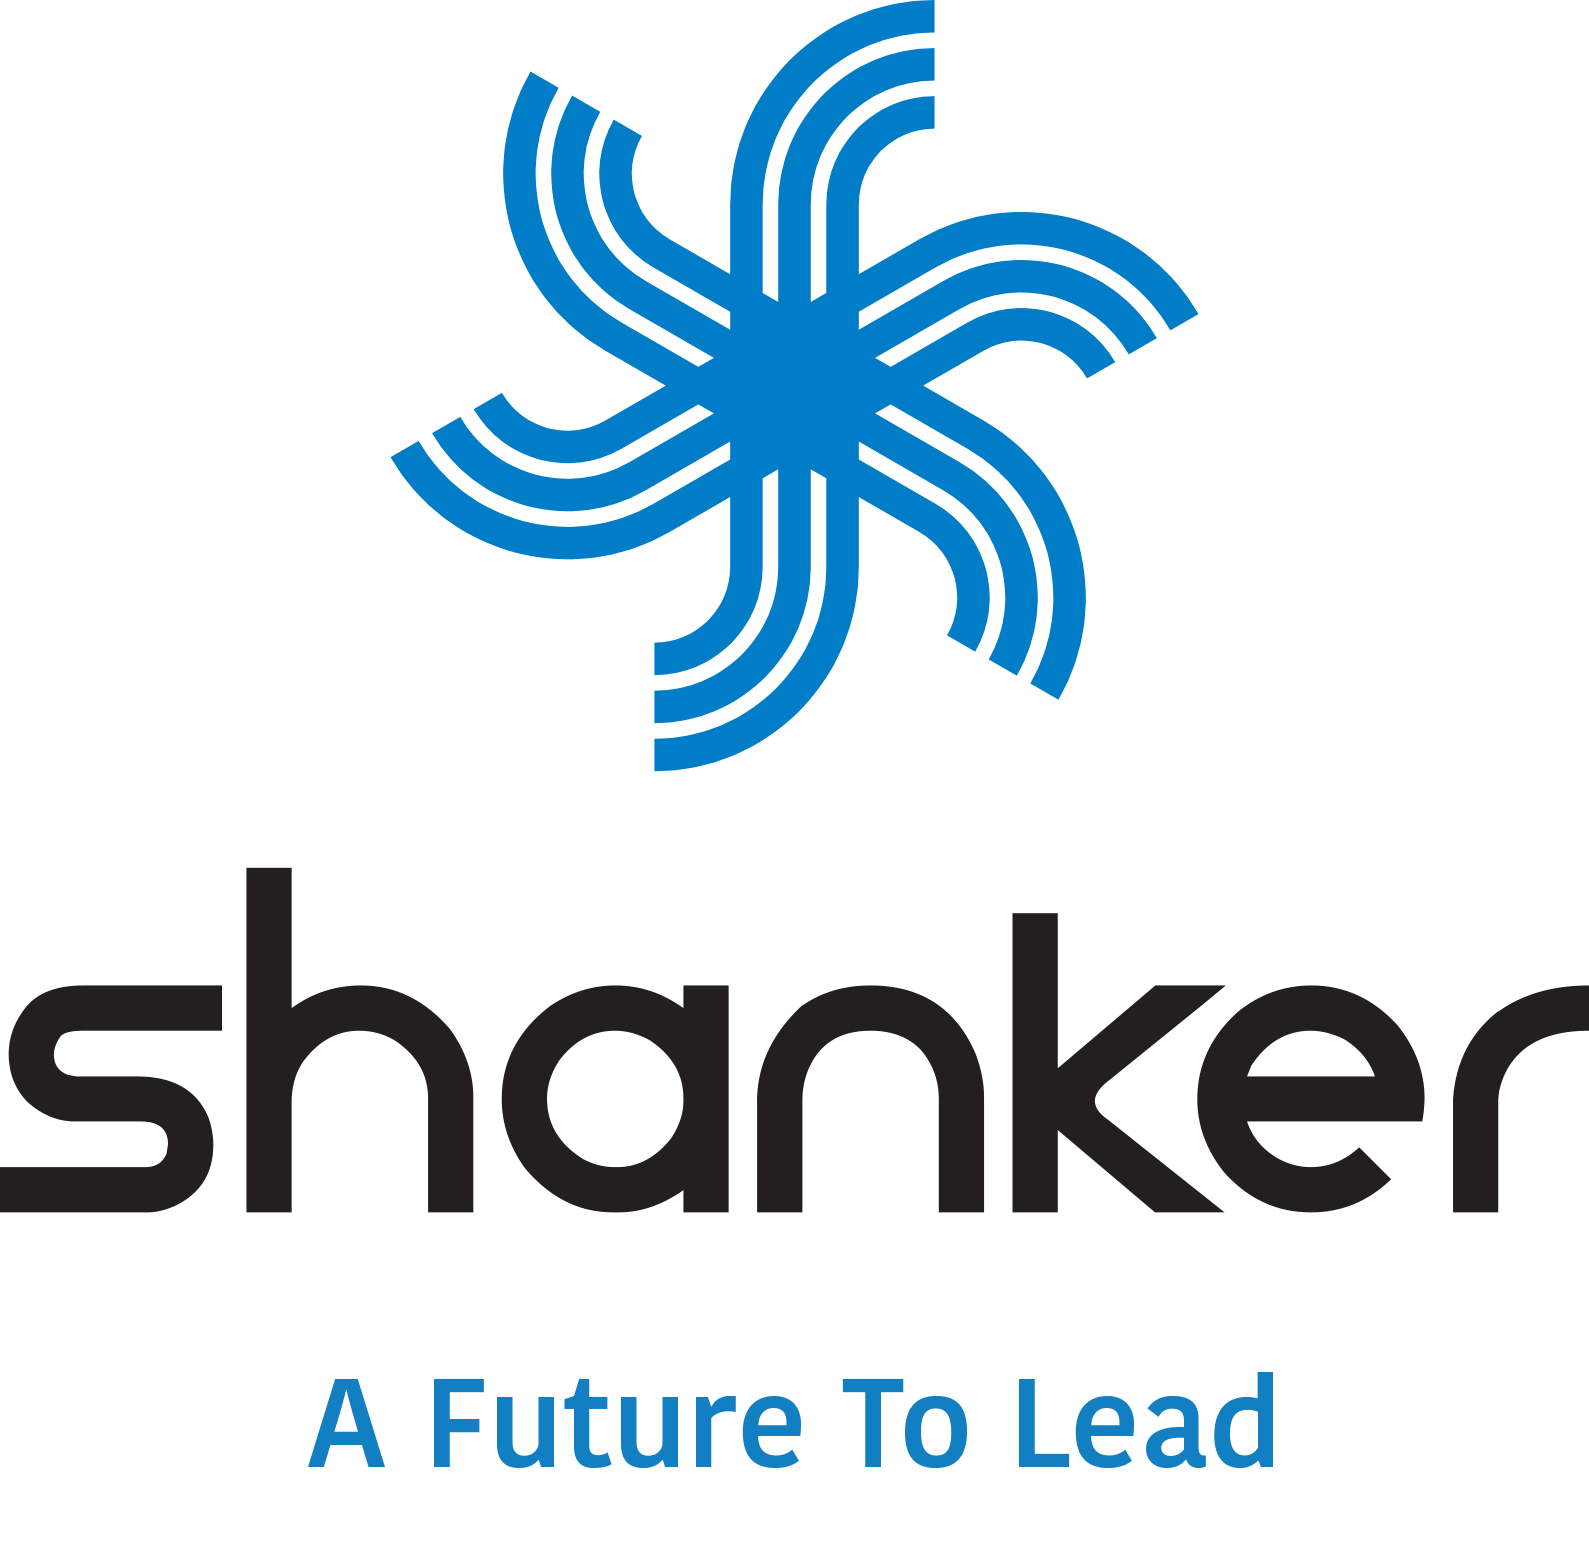 Shanker Group